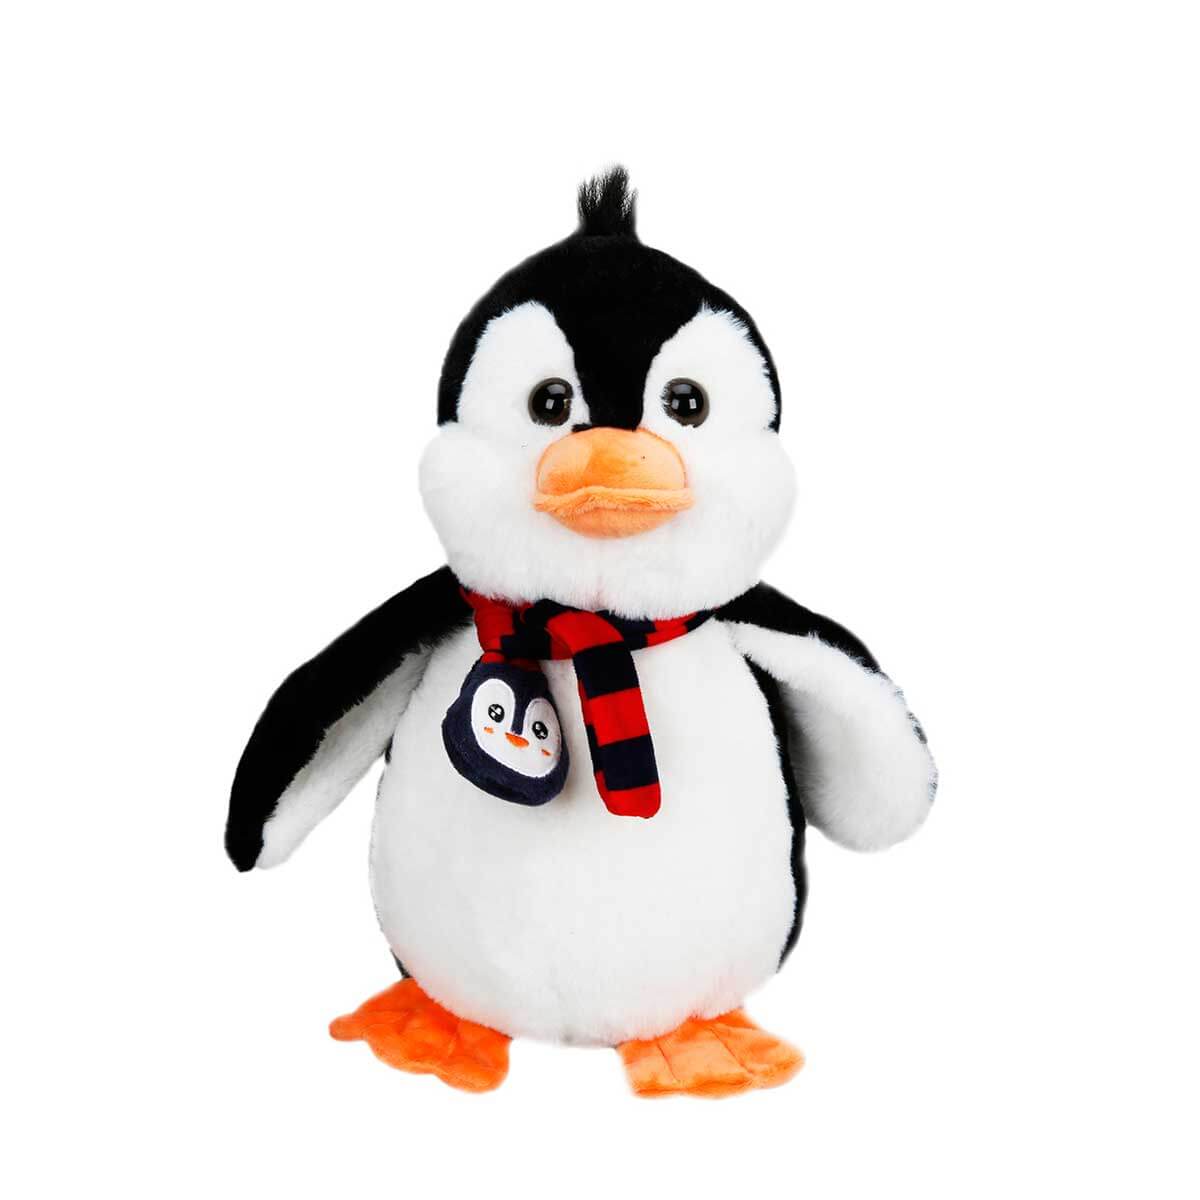 Pinguin de plus, Puffy Friends, 28 cm